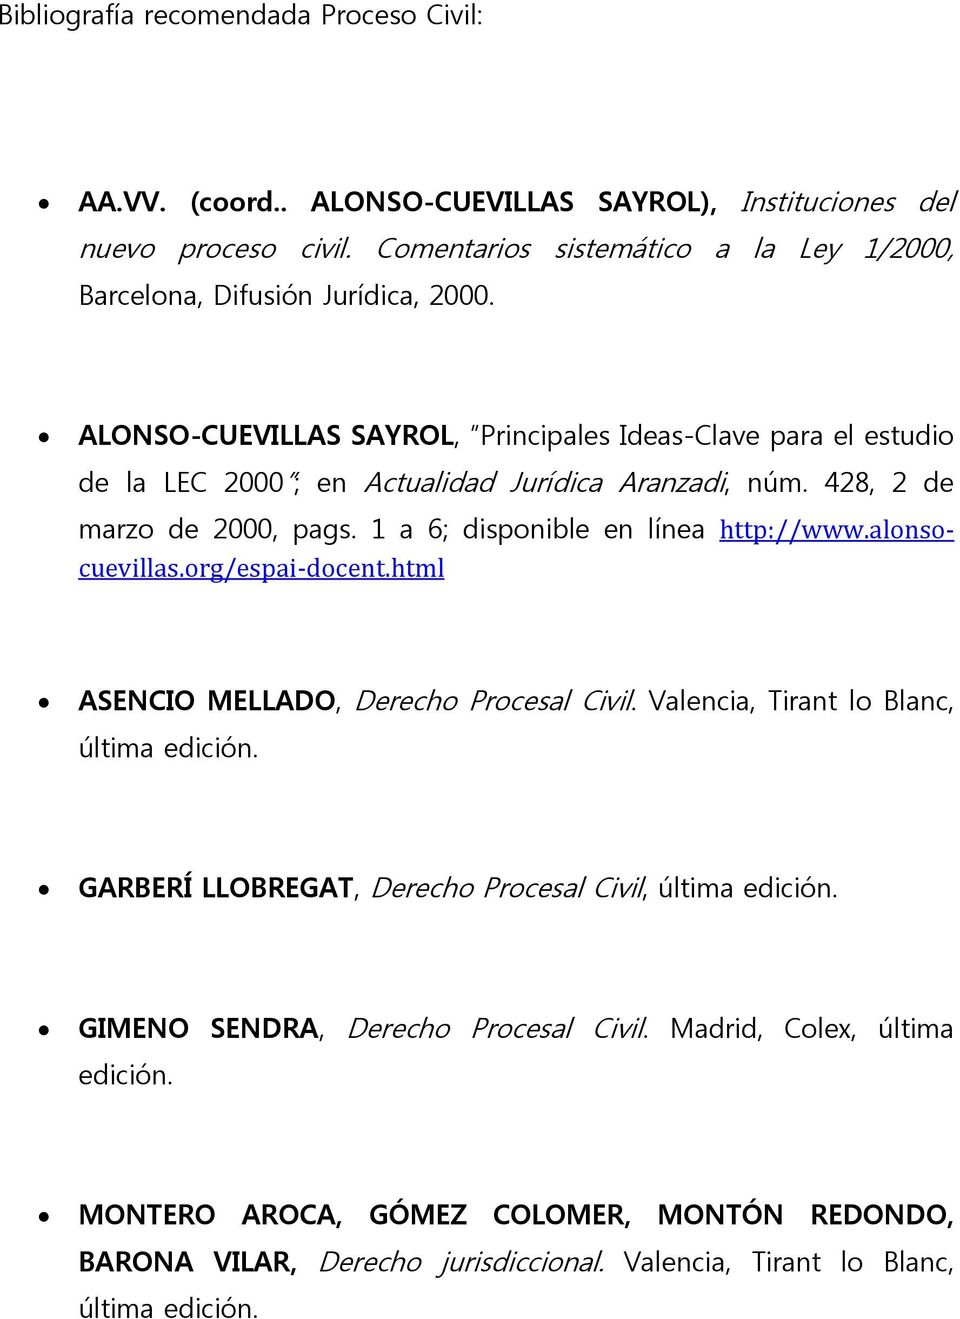 ALONSO-CUEVILLAS SAYROL, Principales Ideas-Clave para el estudio de la LEC 2000 ; en Actualidad Jurídica Aranzadi, núm. 428, 2 de marzo de 2000, pags. 1 a 6; disponible en línea http://www.